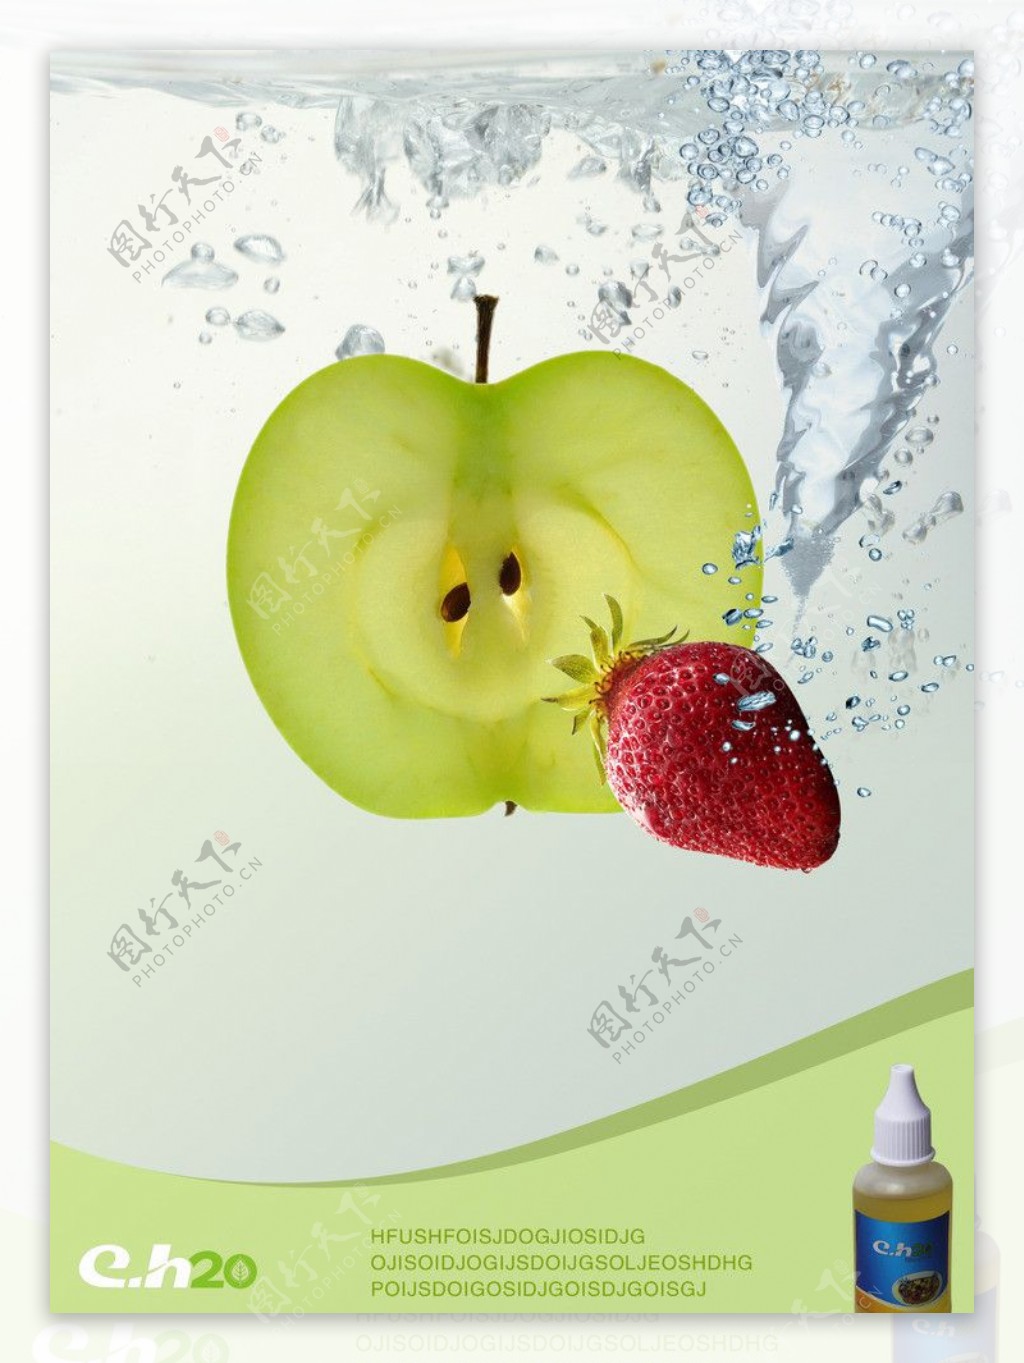 电子烟绿色环保产品海报图片